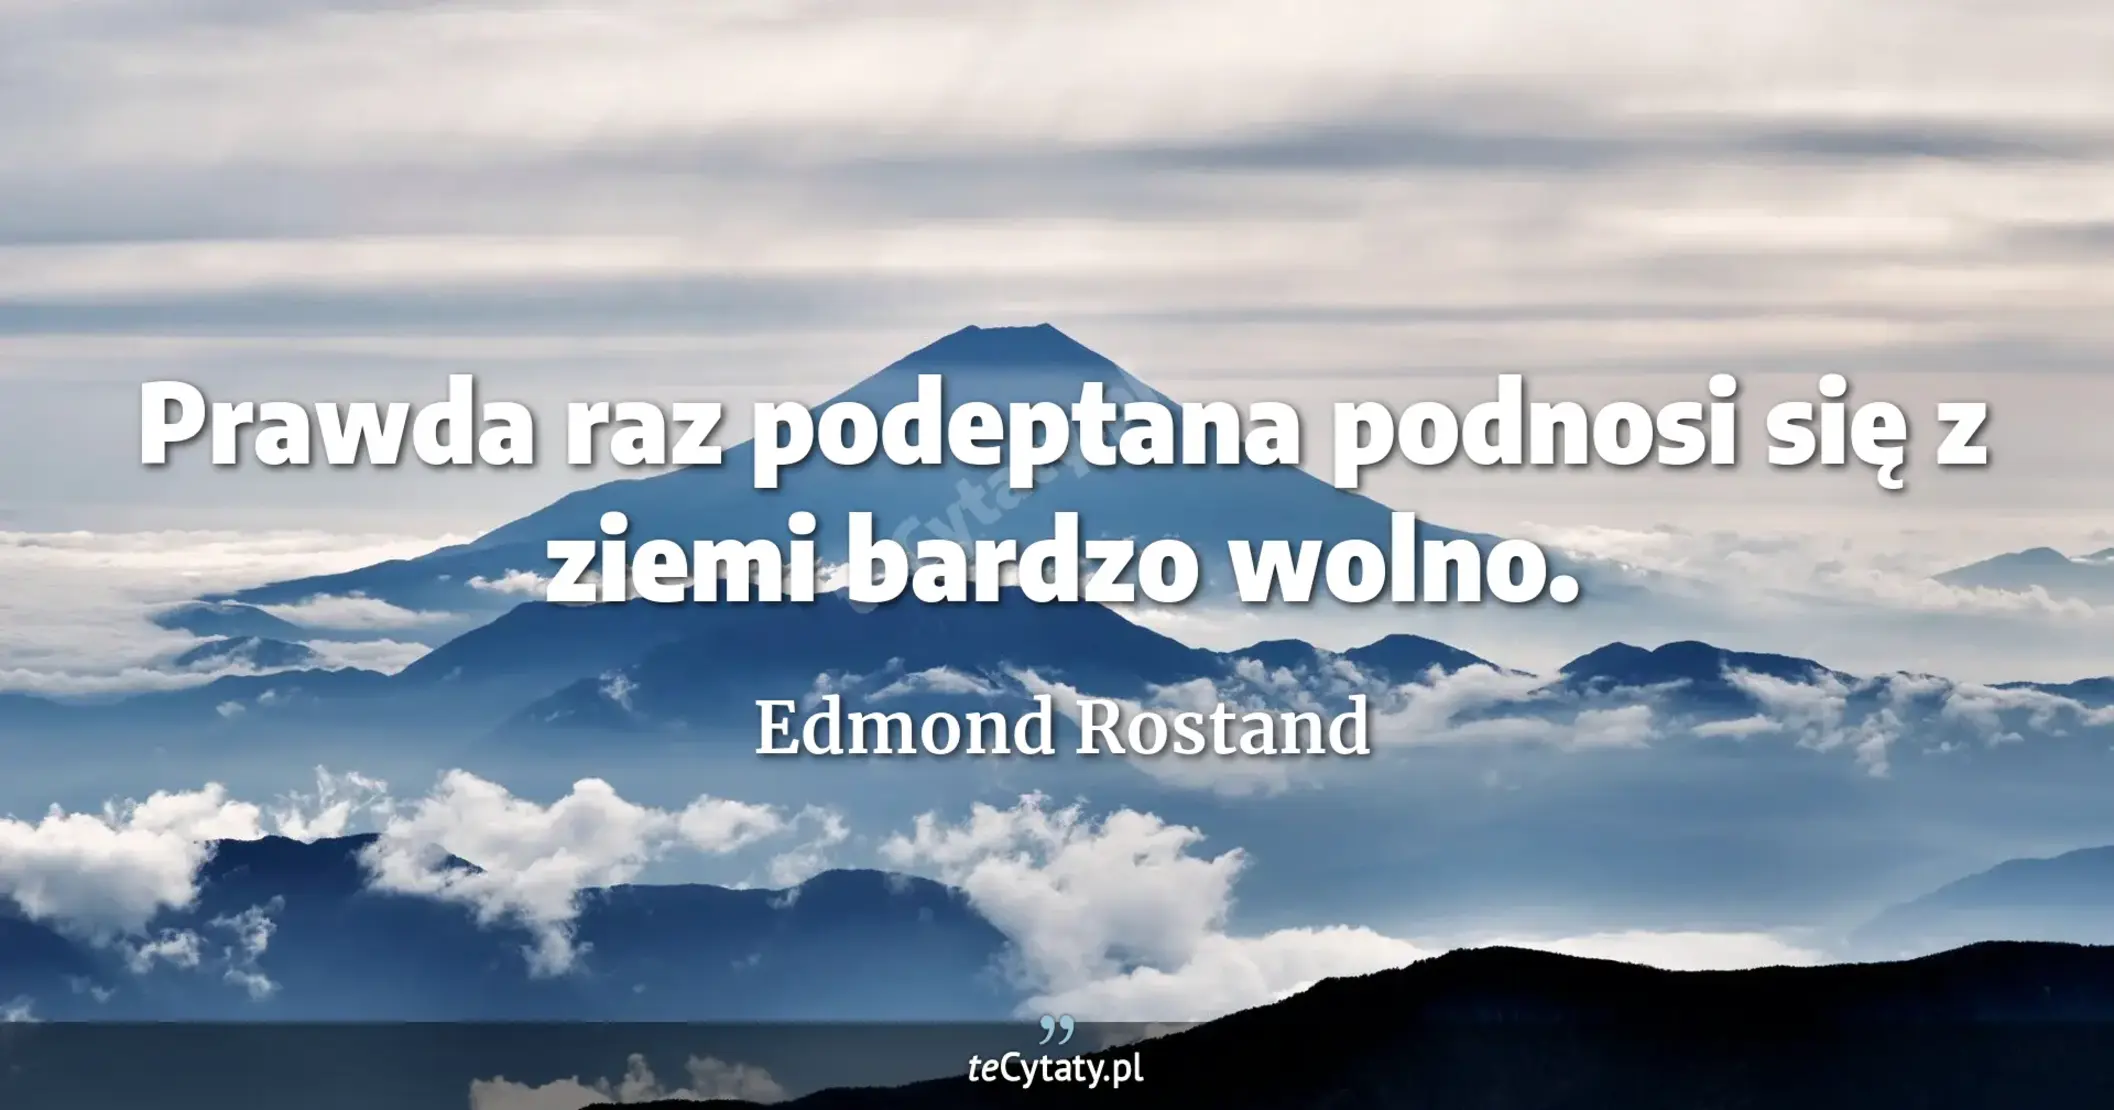 Prawda raz podeptana podnosi się z ziemi bardzo wolno. - Edmond Rostand